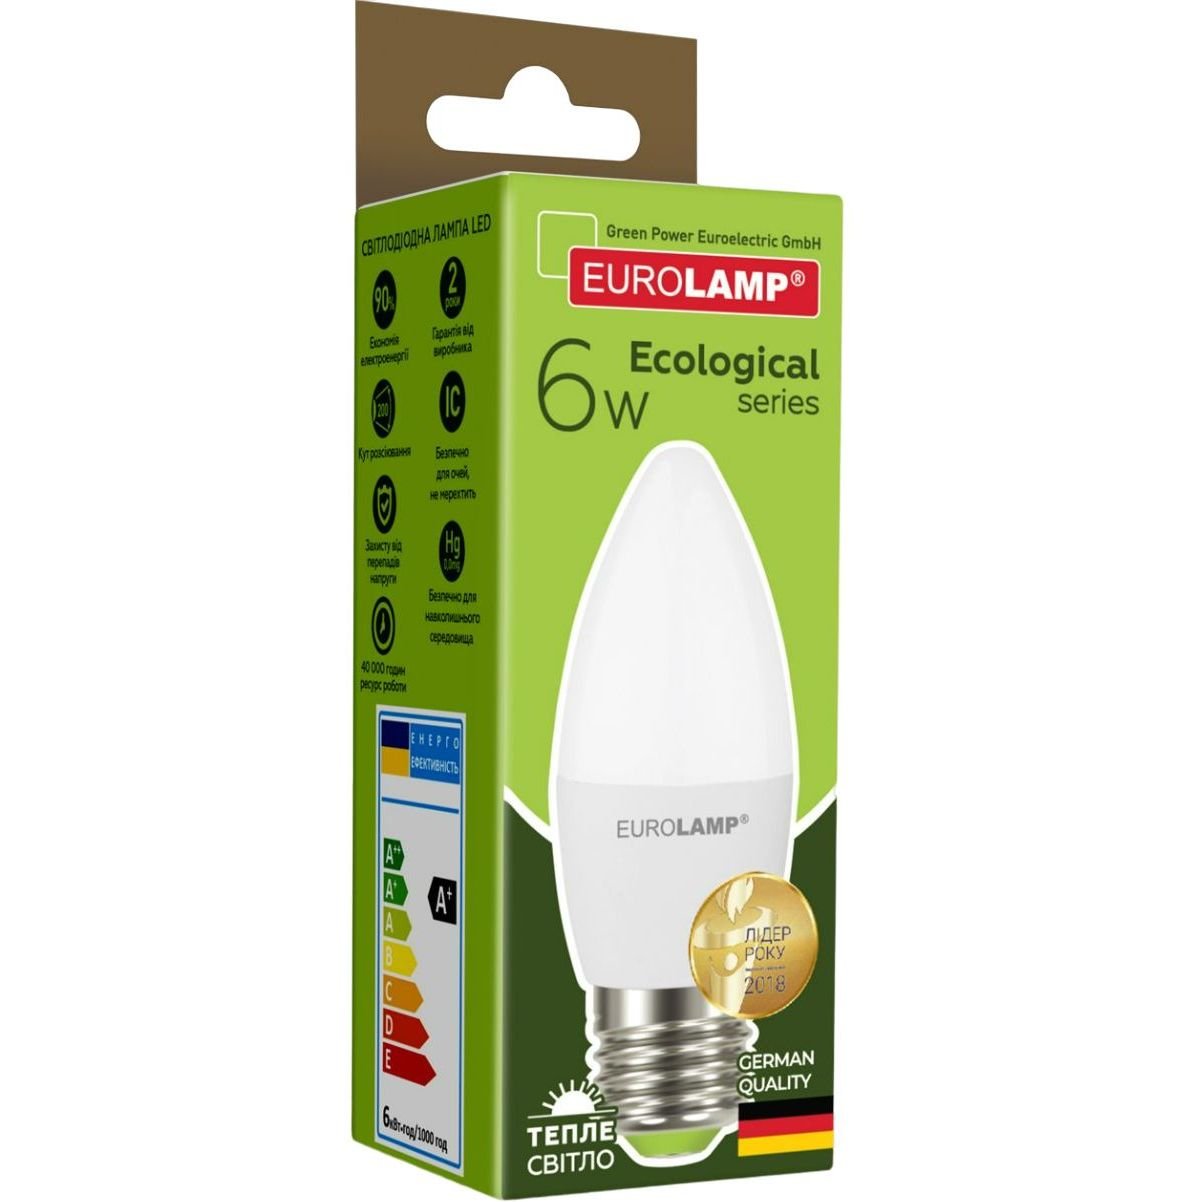 Светодиодная лампа Eurolamp LED Ecological Series, CL 6W, E27, 3000K (LED-CL-06273(P)) - фото 4